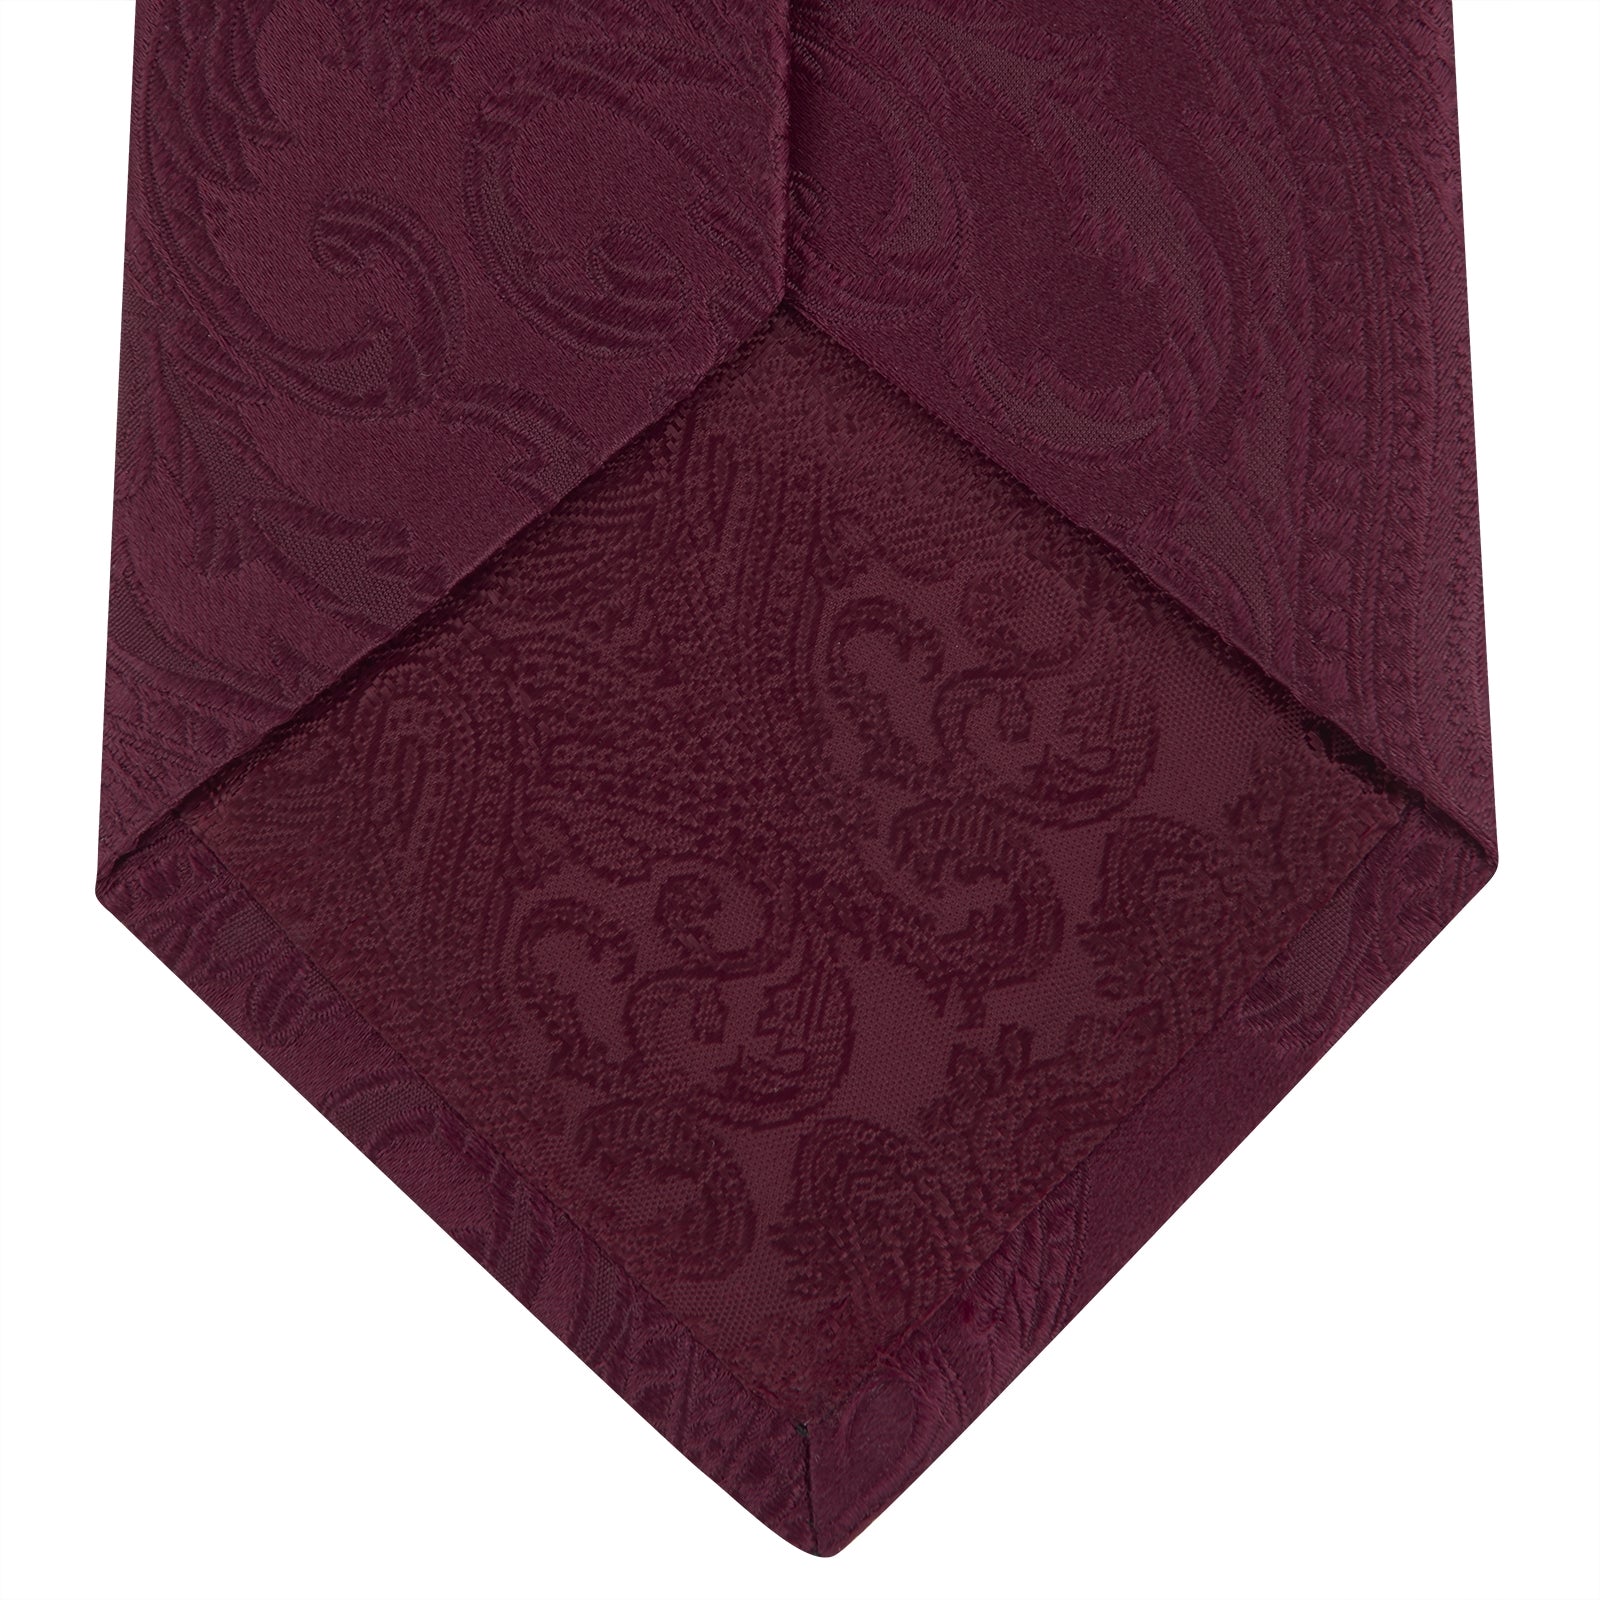 Burgundy Paisley Silk Tie